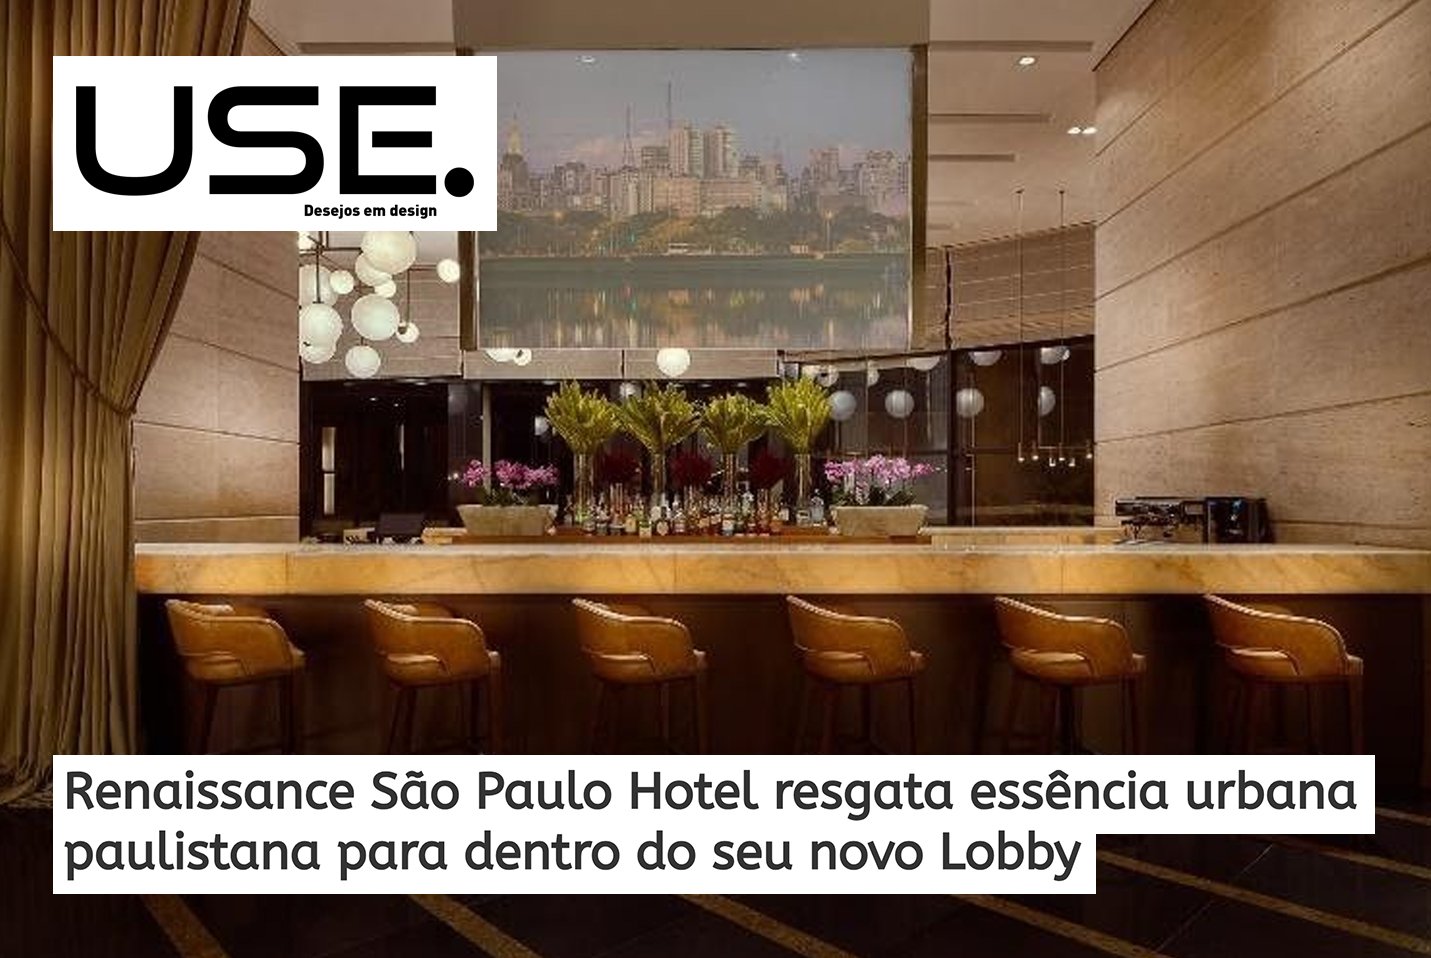 02/05/21 - Renaissance São Paulo Hotel resgata essência urbana paulistana para dentro do seu novo Lobby 